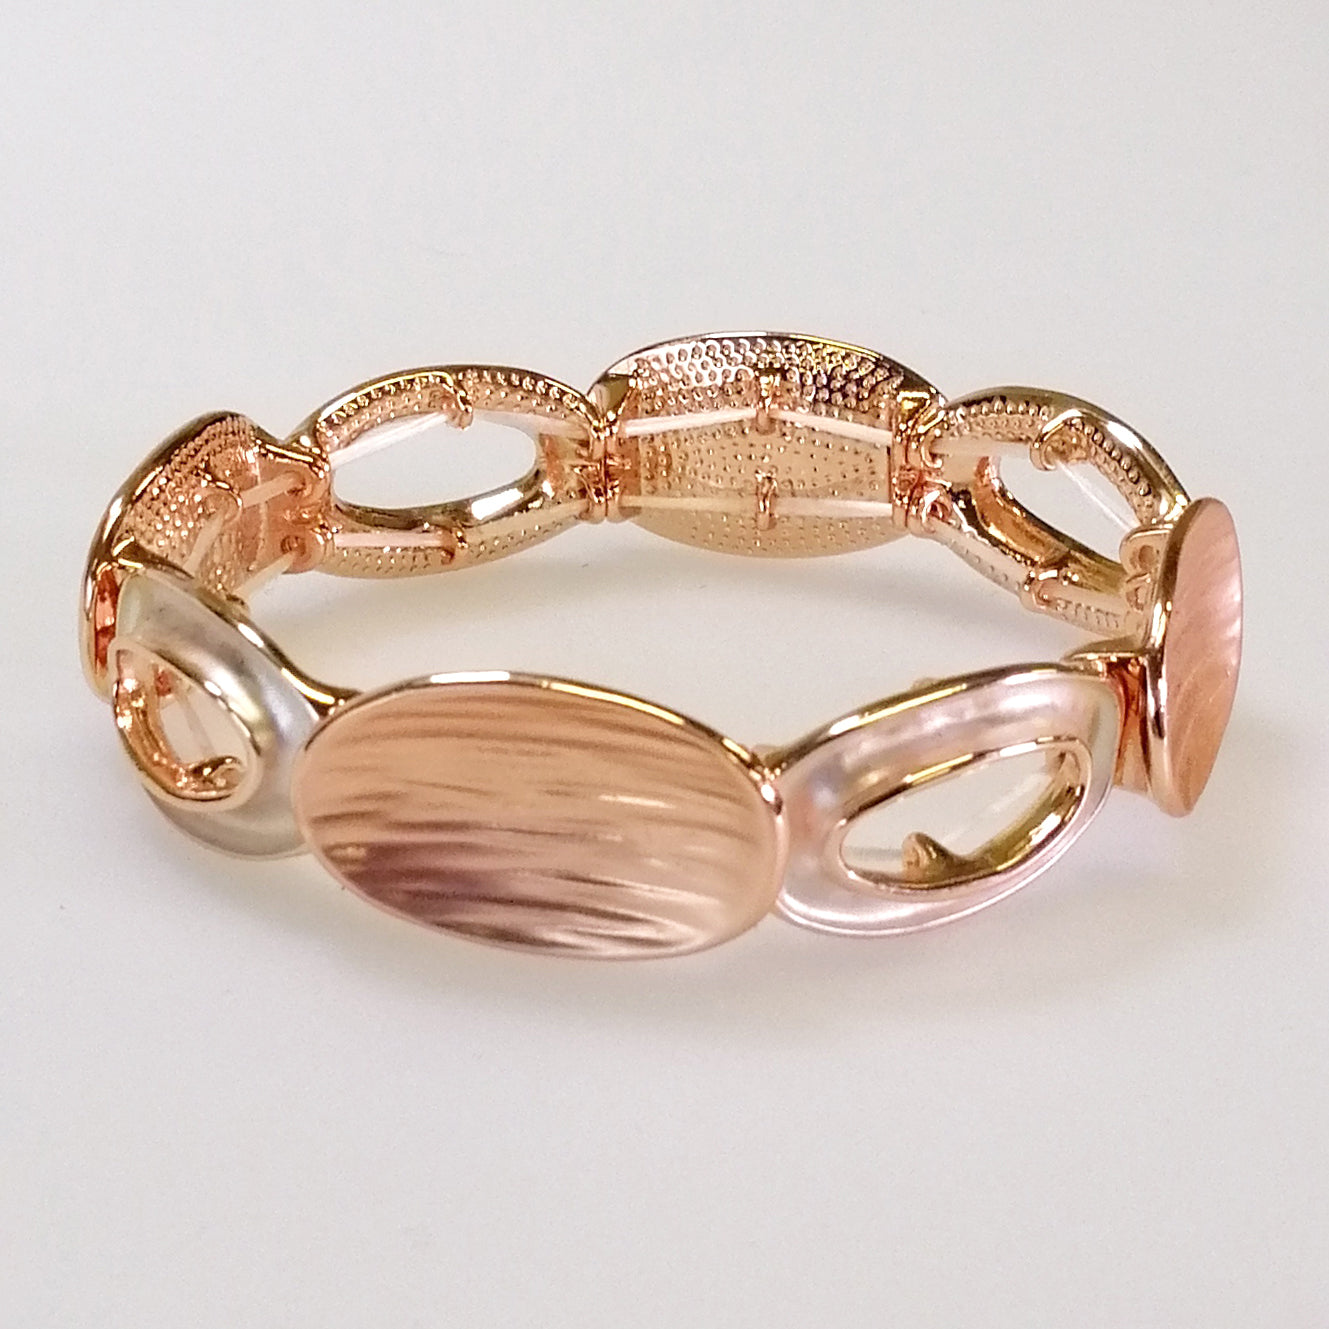 Kiwicraft - Rose Gold Round Beads Bracelet